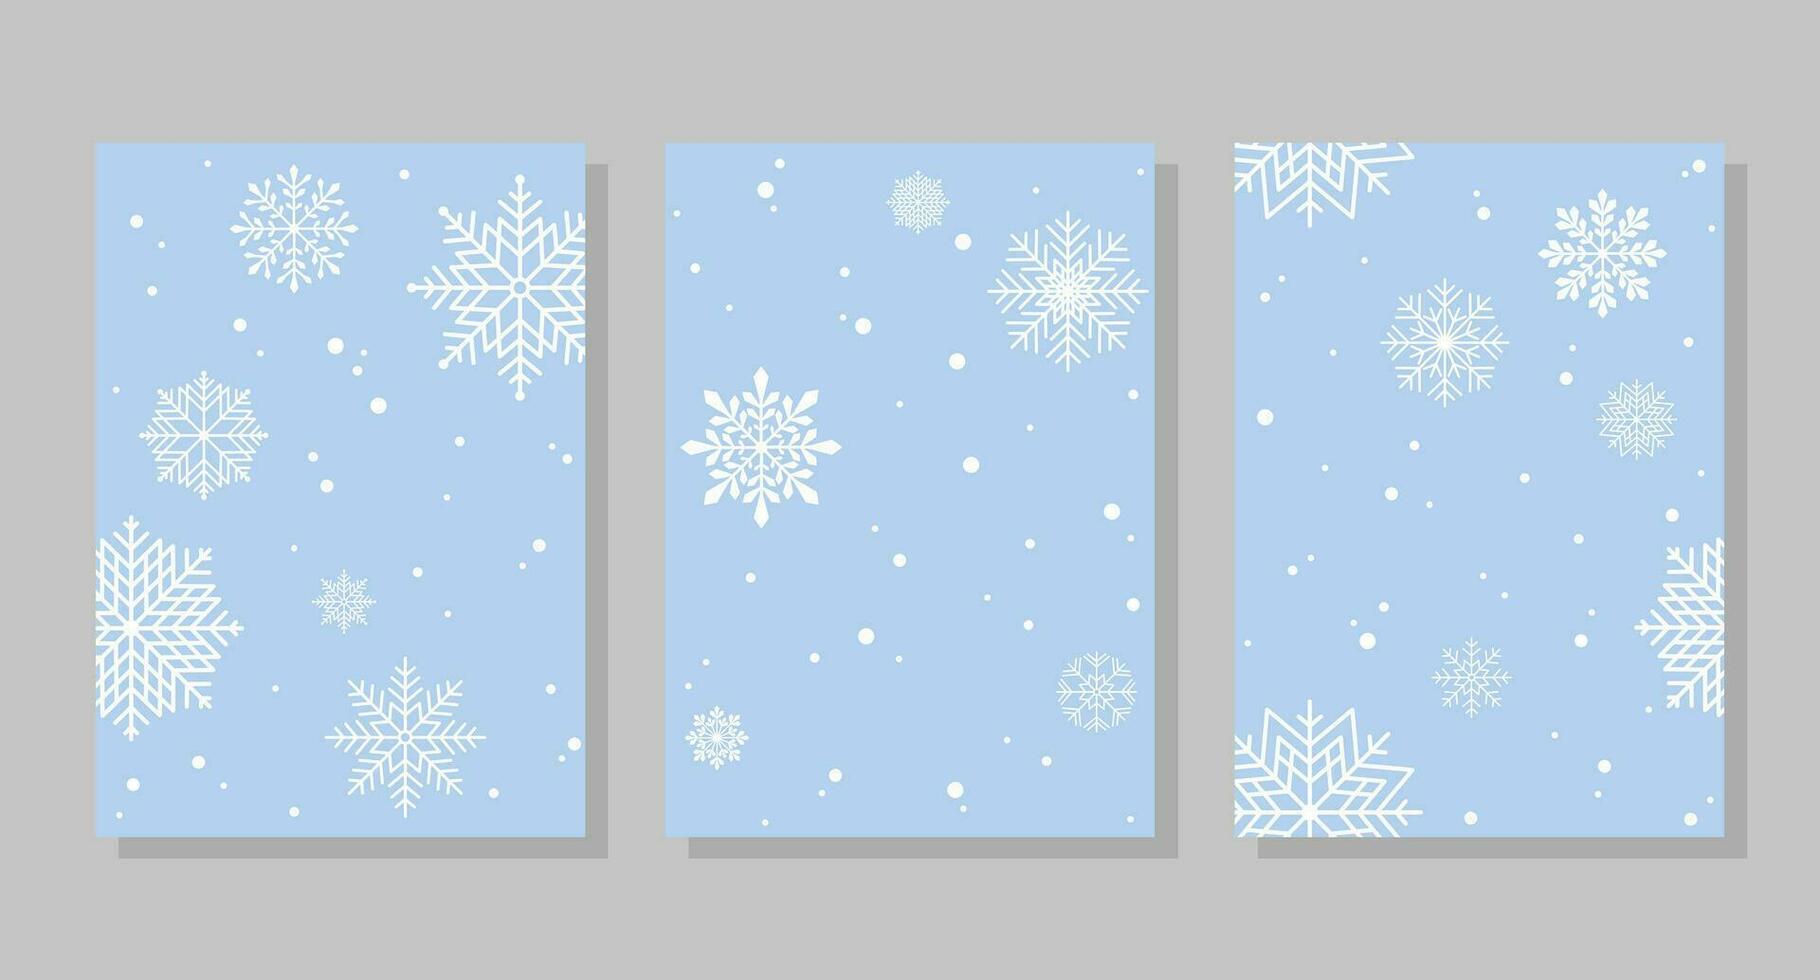 inverno sfondi con i fiocchi di neve e neve, cornici. vettore illustrazione. sociale media bandiera modello per storie, messaggi, blog, carte.